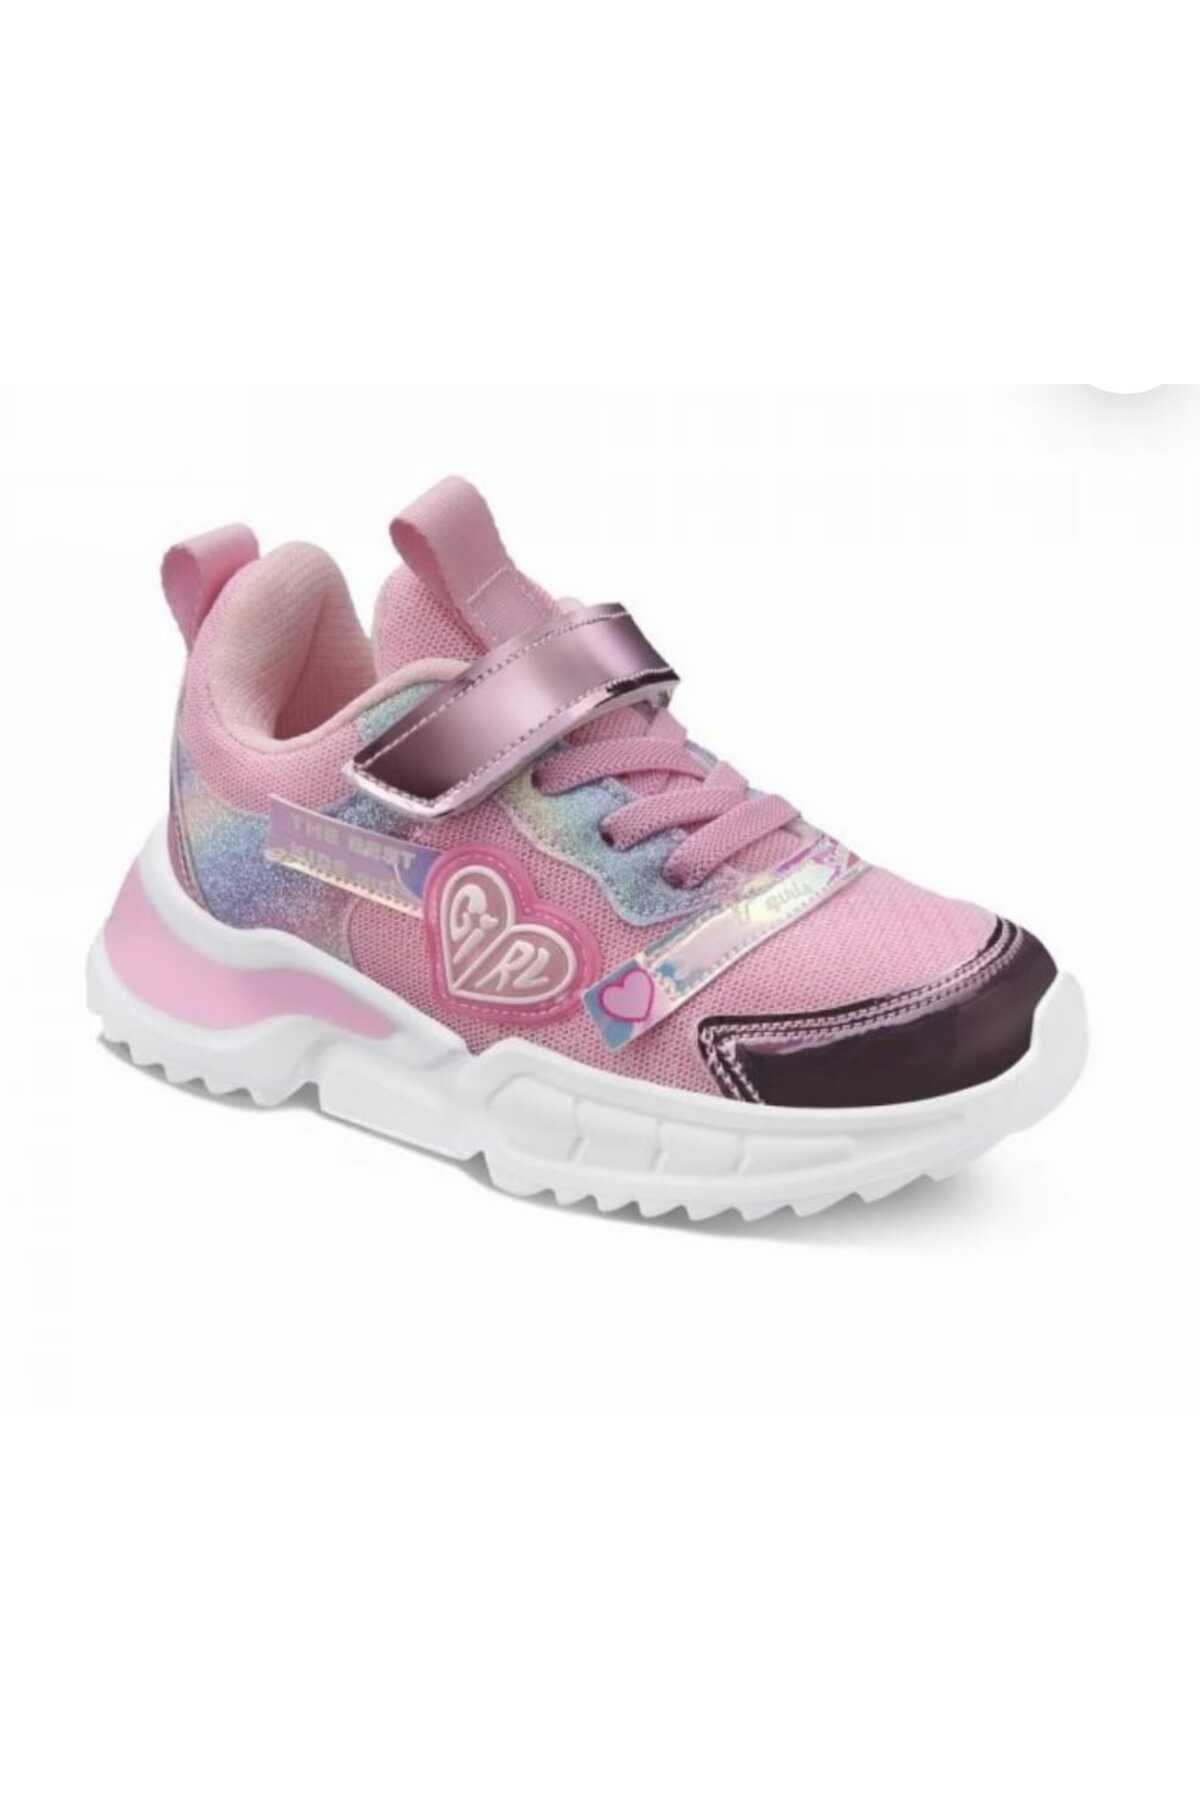 Sanbe Mega Ayakkabı 130 V9216 31-35 Kız Çocuk Sanbe Işıklı Ayakkabı